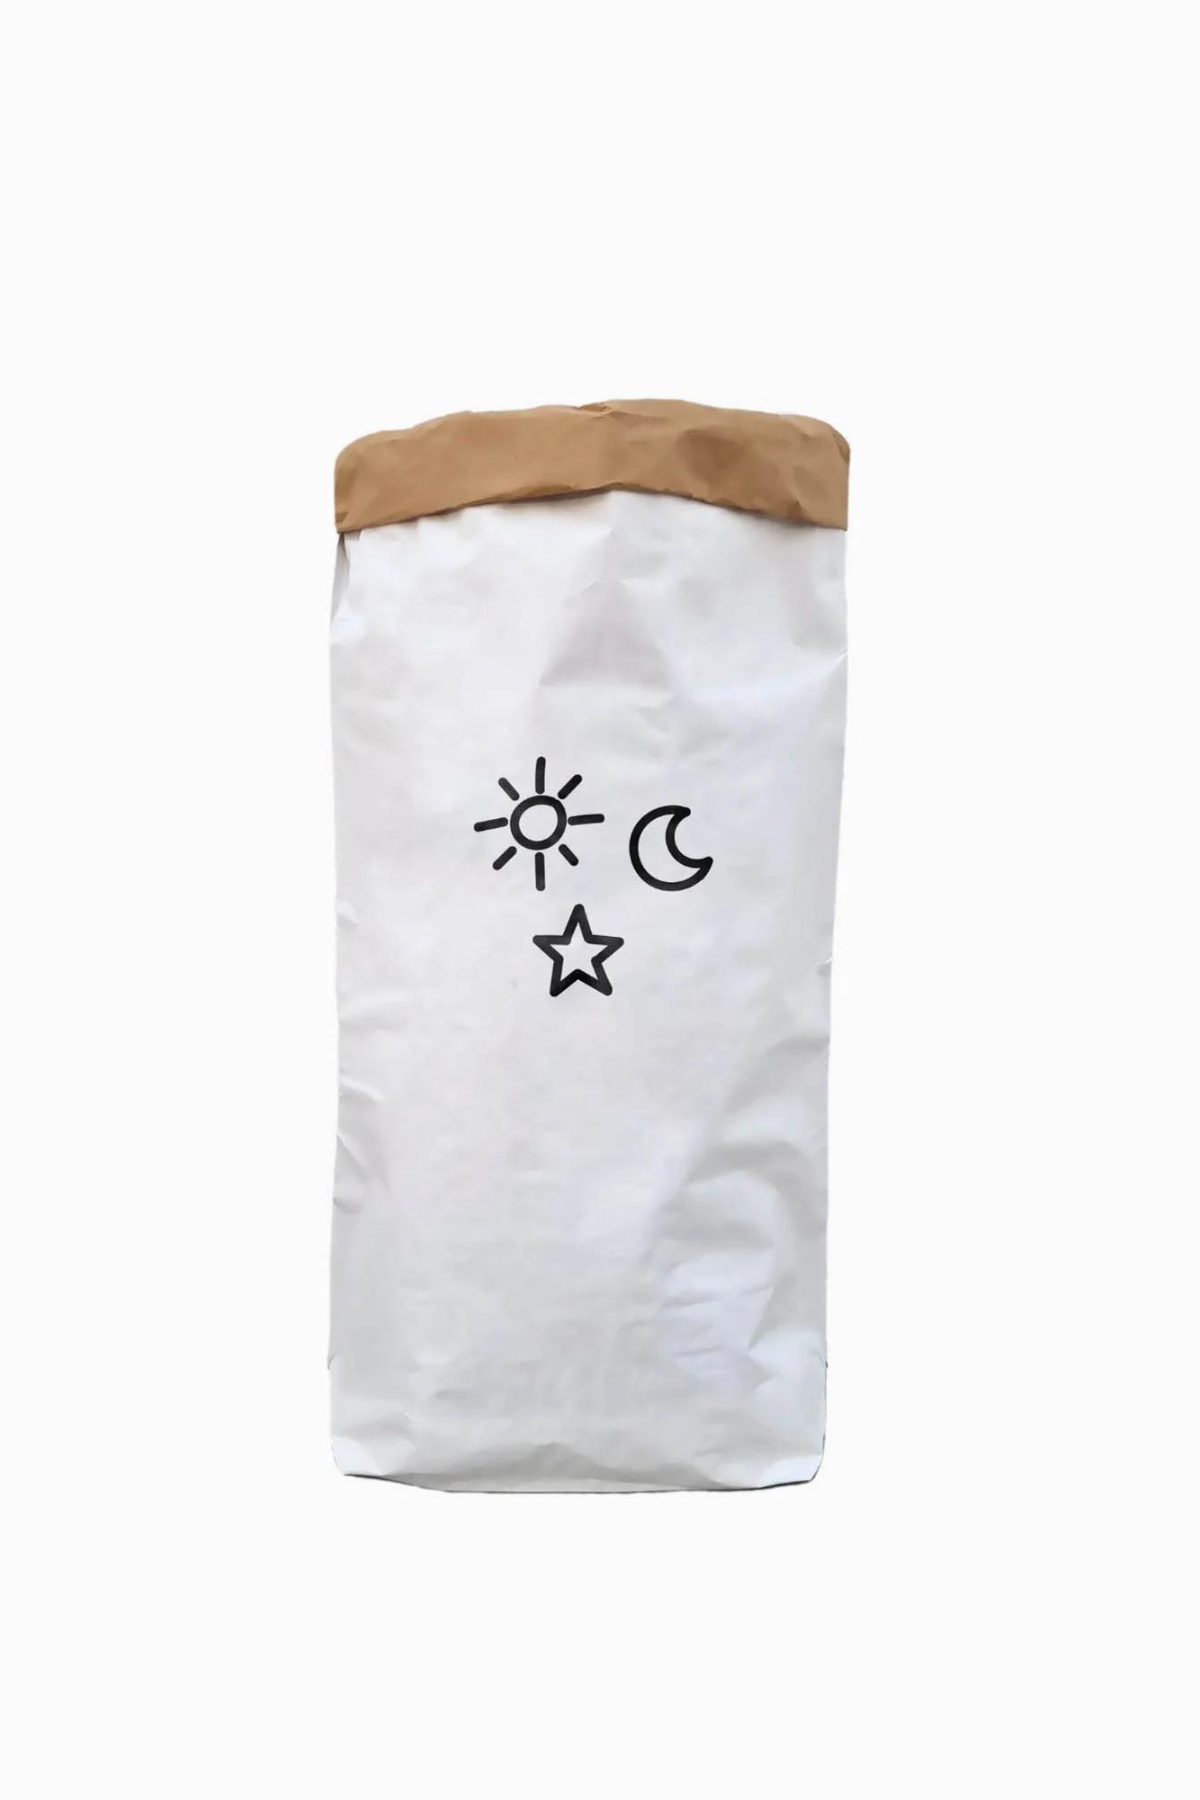 Paperbag "Sun, Moon, Stars"